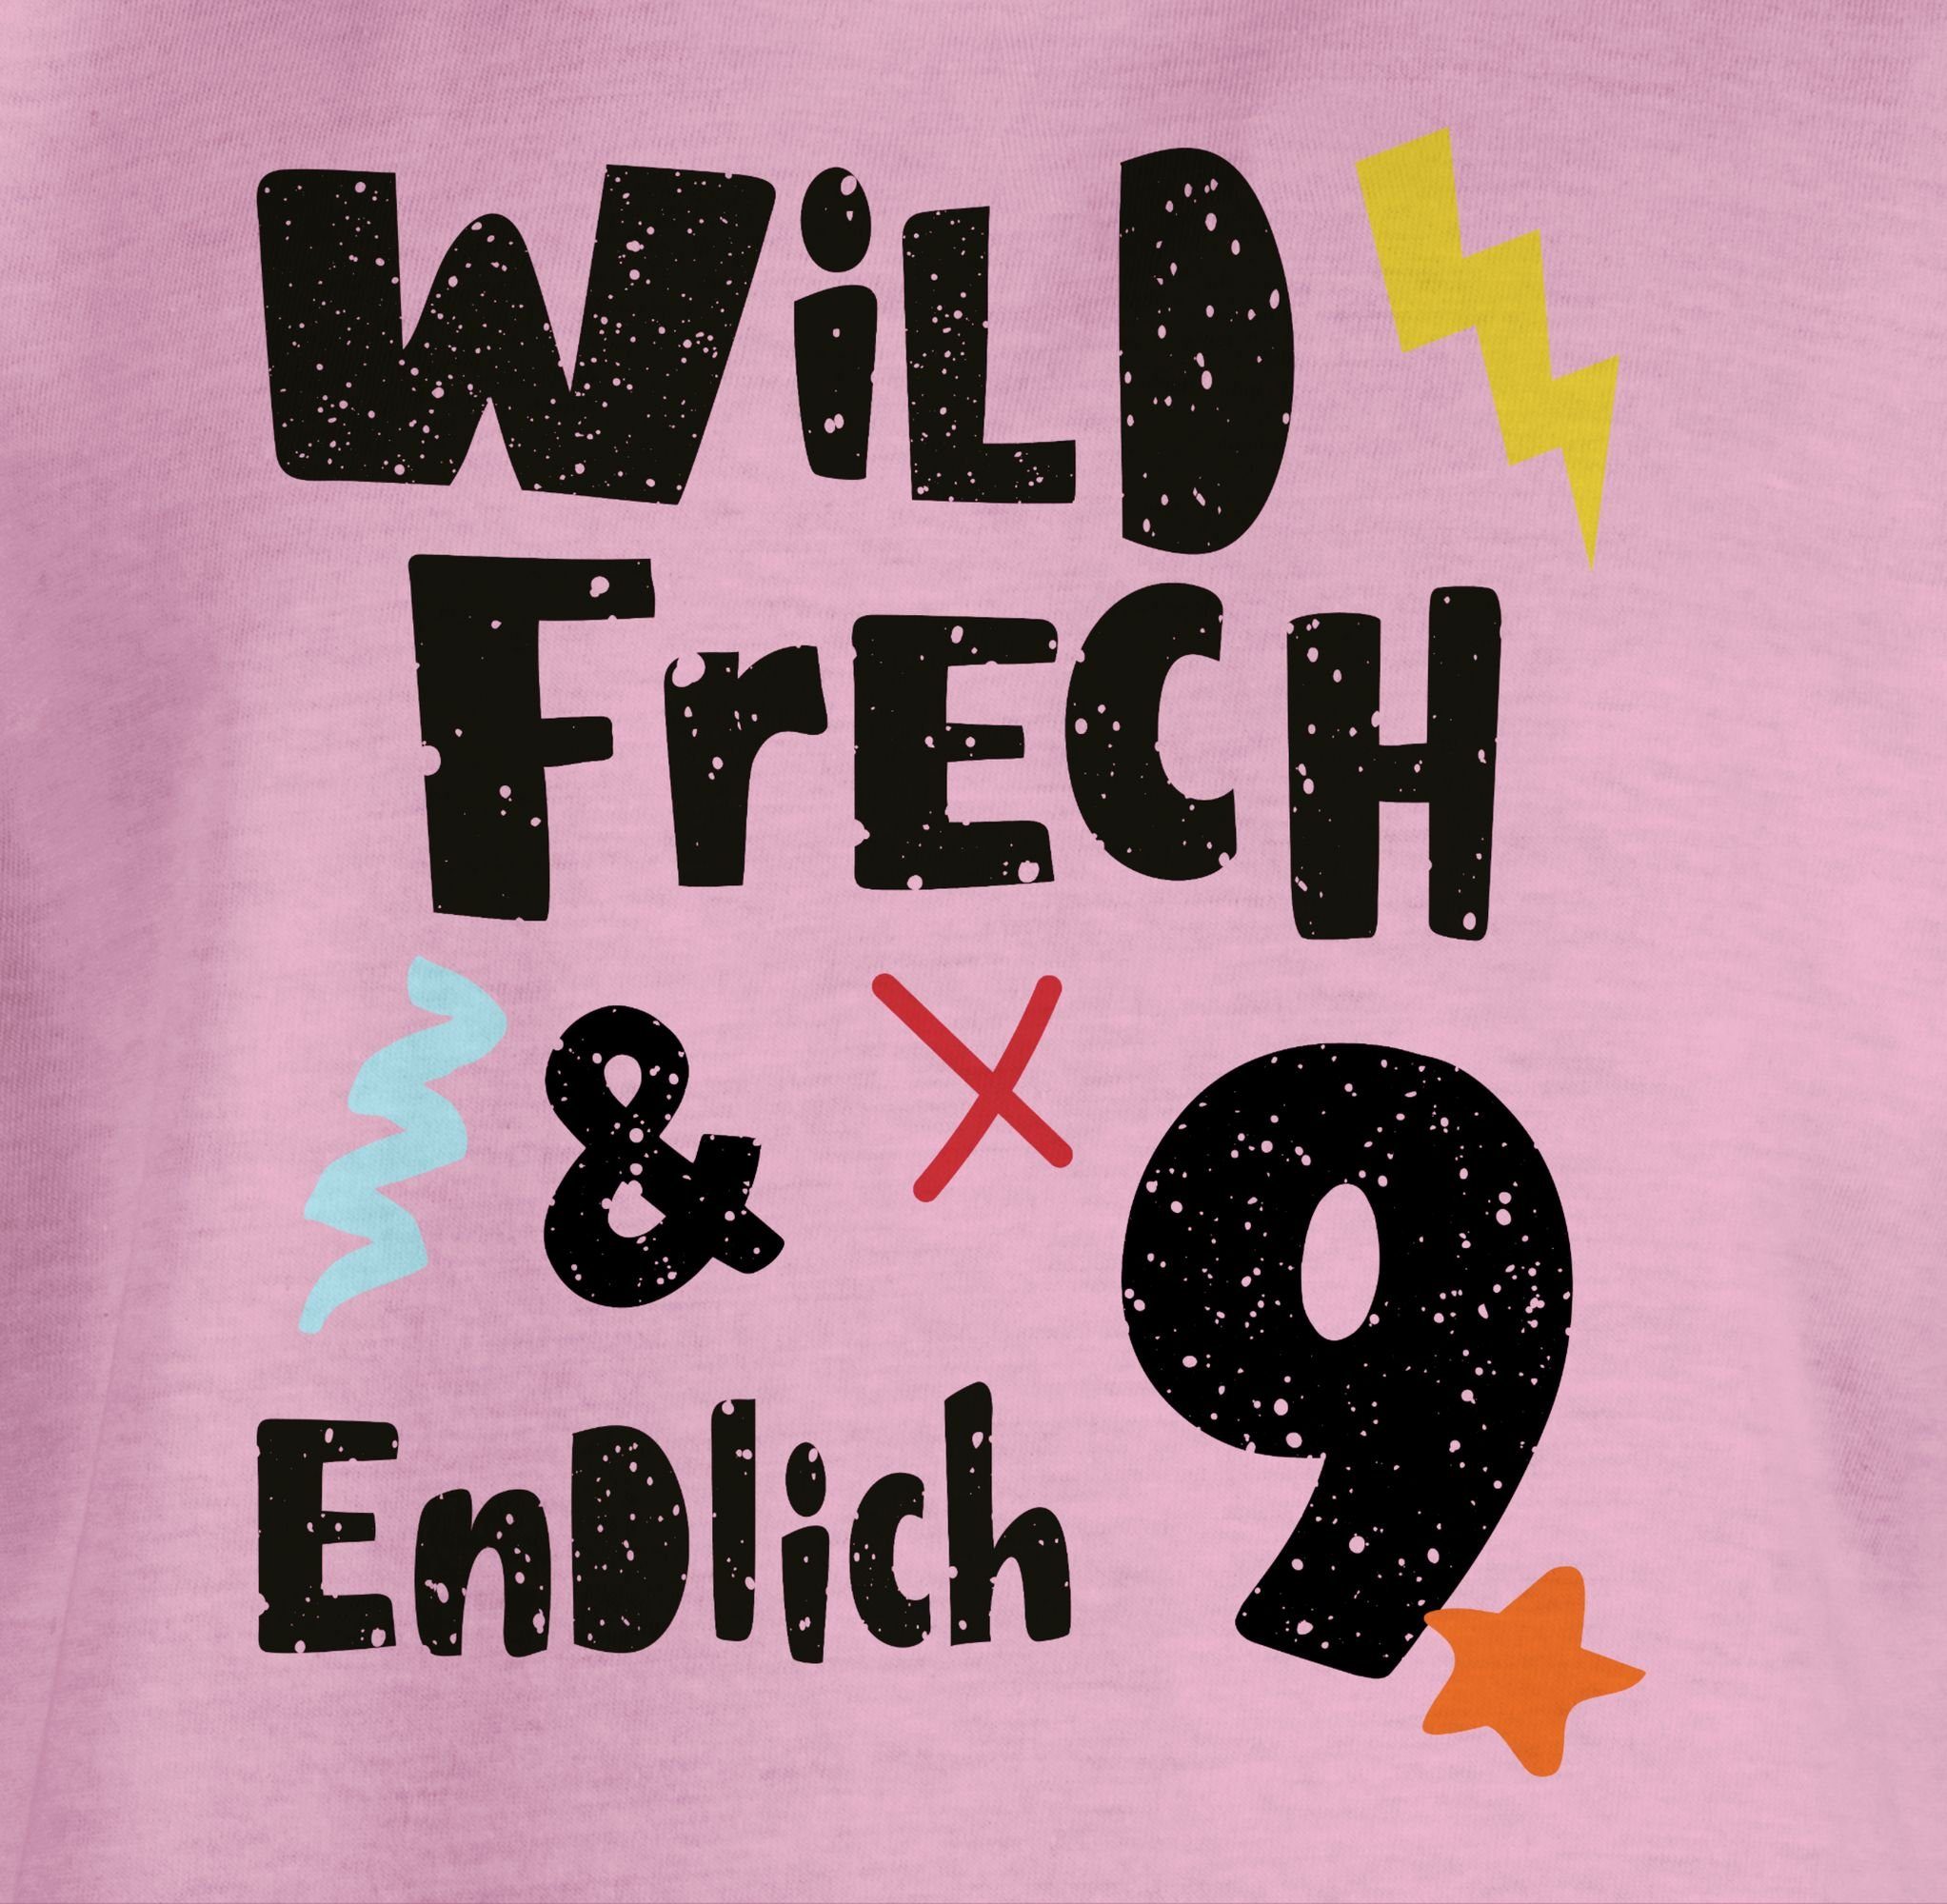 Jahre Rosa Wunderbar T-Shirt und Shirtracer Wild endlich Geburtstag 2 9. frech - 9 neun